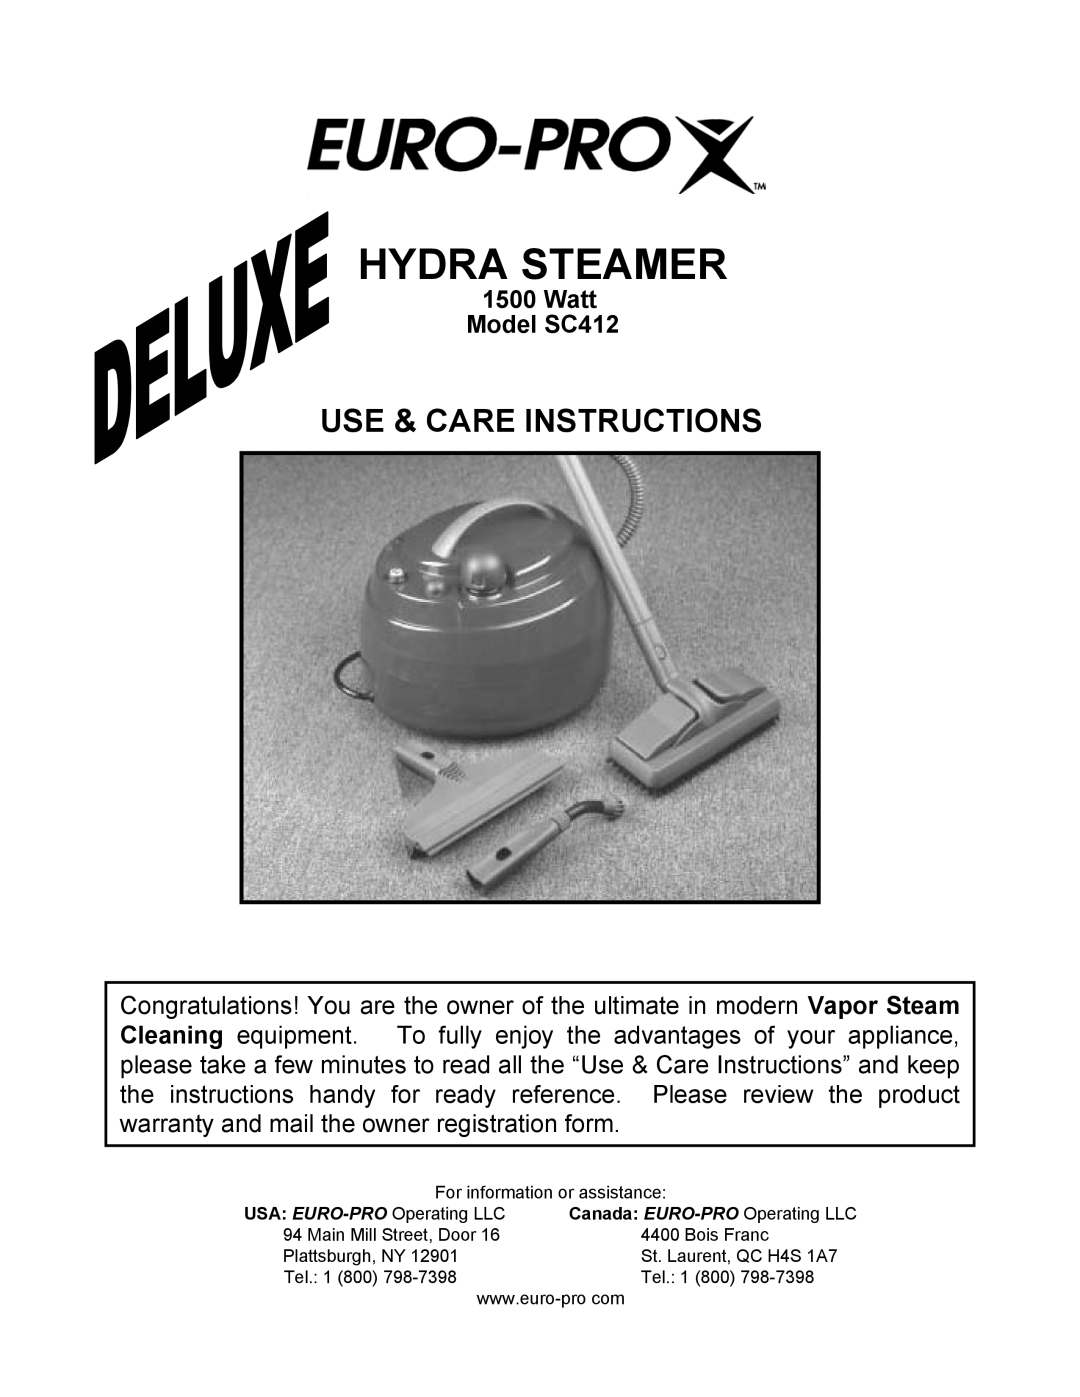 Euro-Pro warranty Hydra Steamer, Use & Care Instructions, Watt Model SC412 